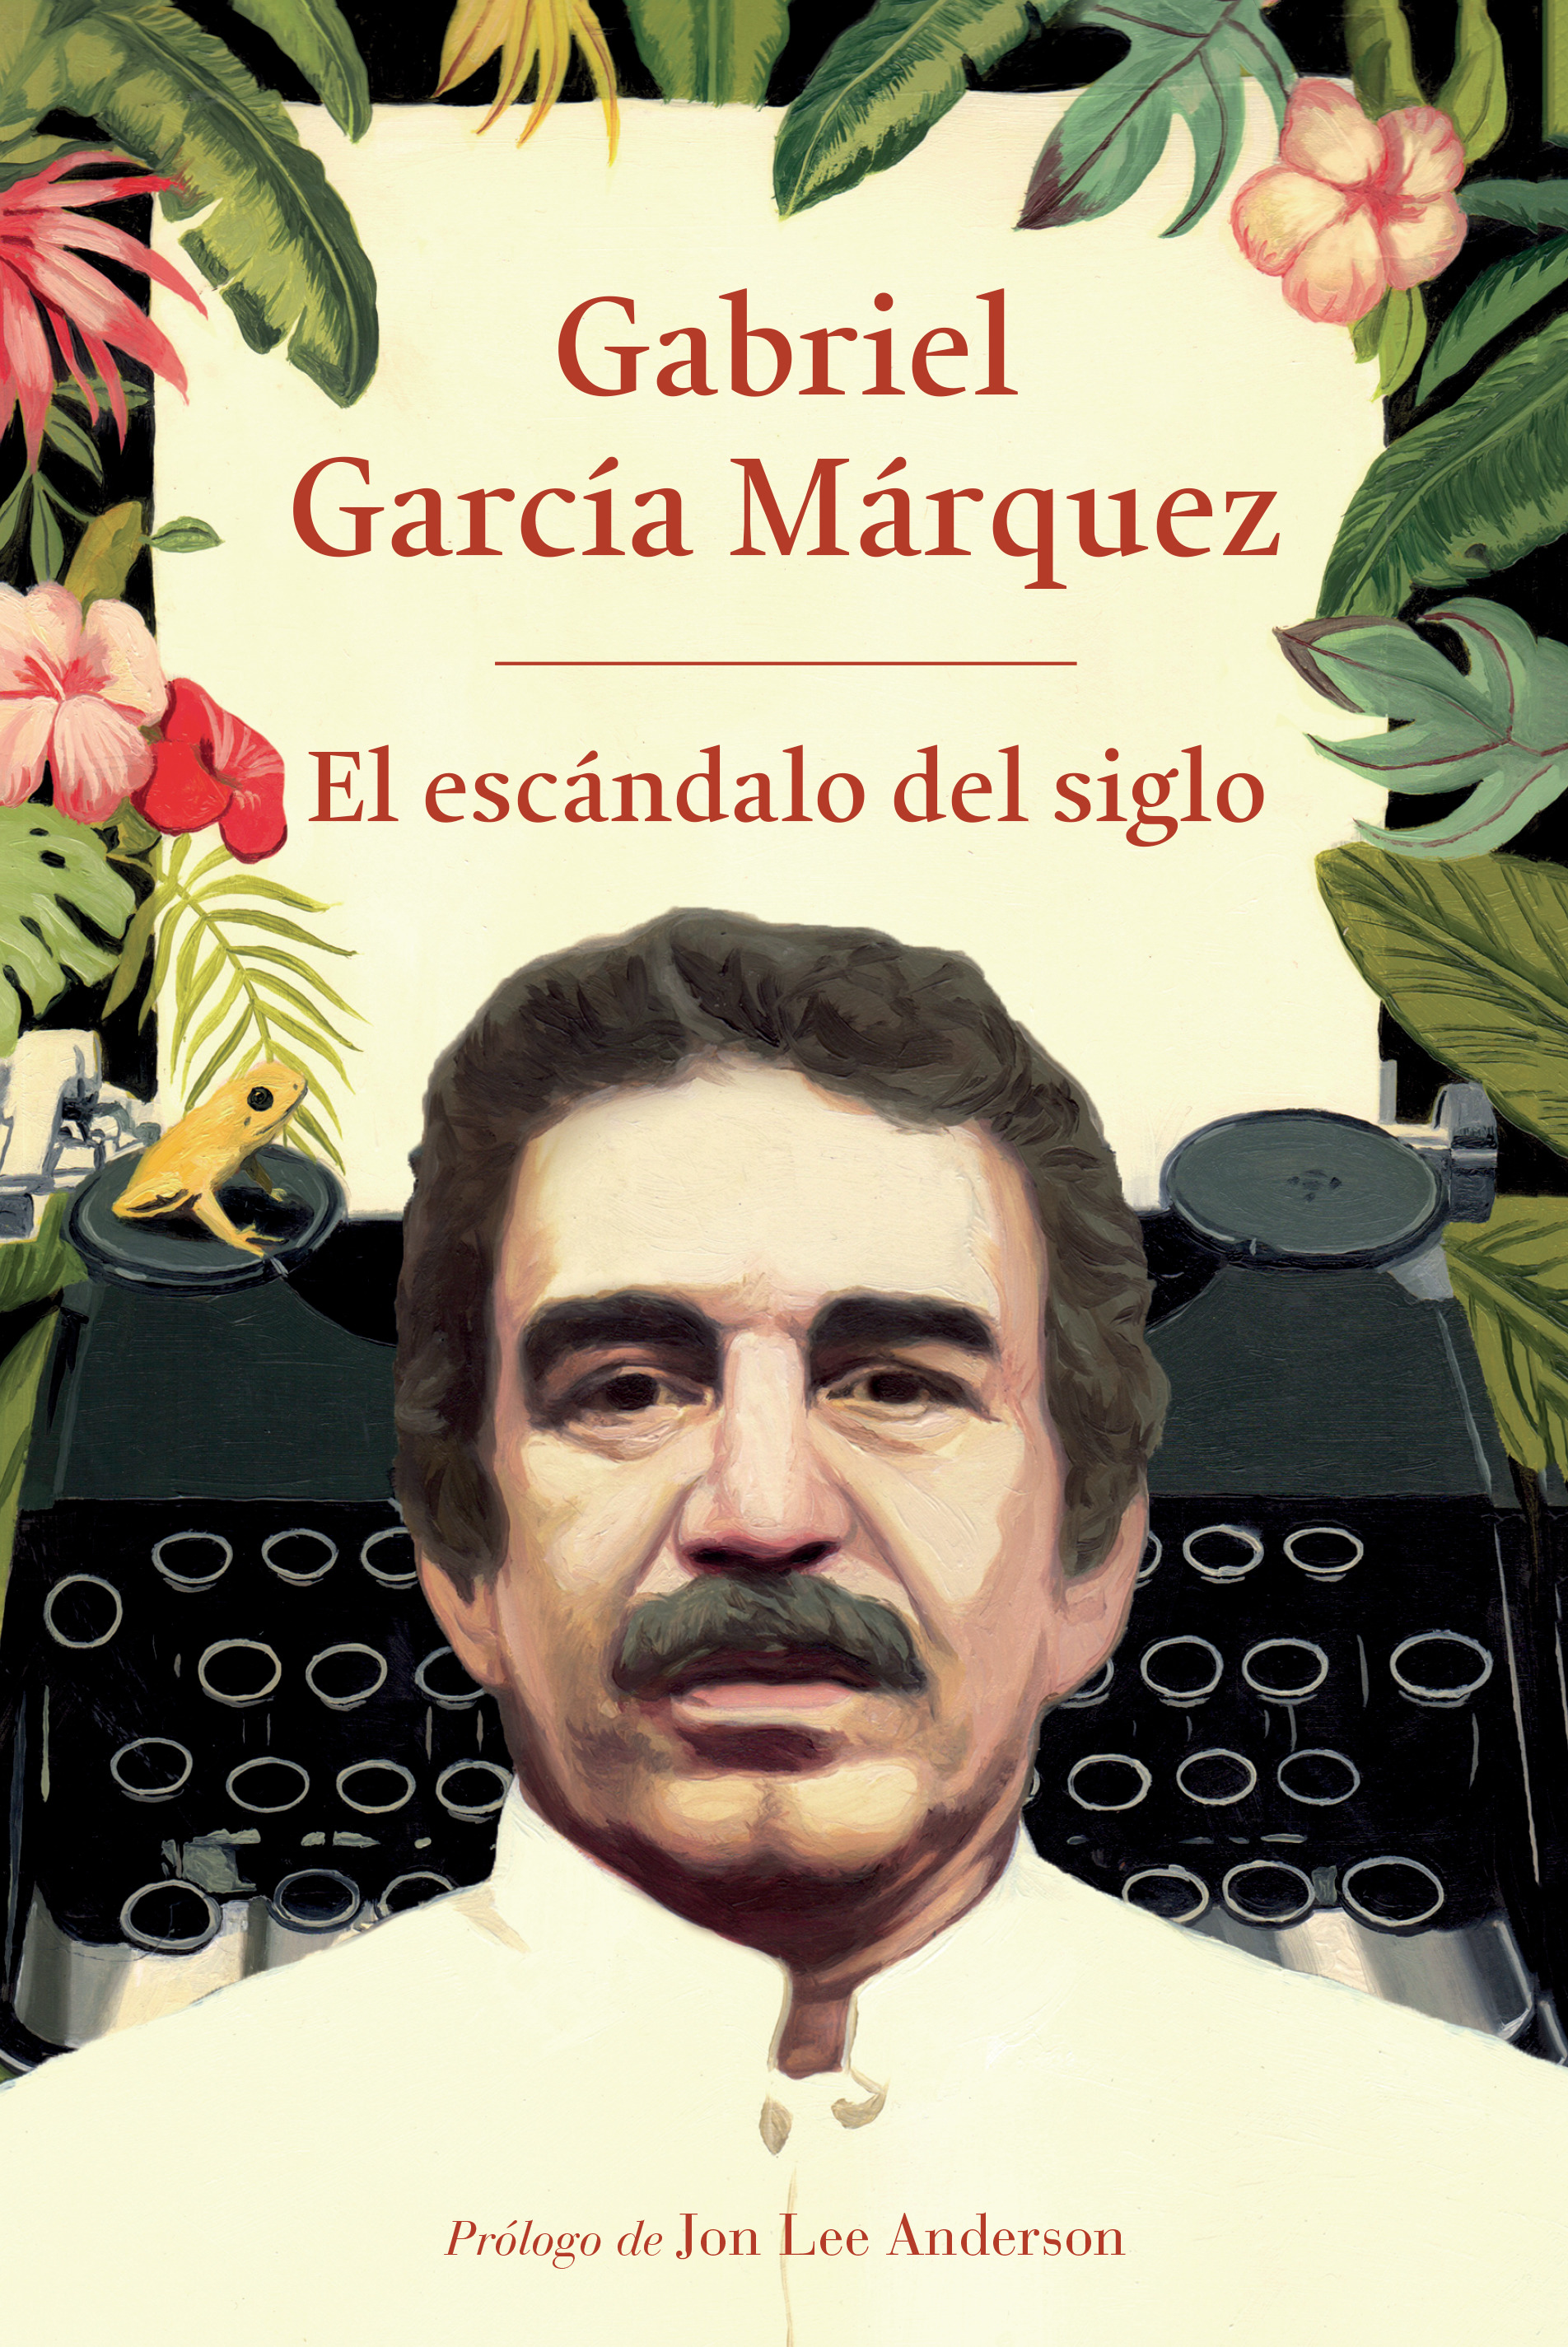 Tapa de "El escándalo del siglo" de García Márquez.